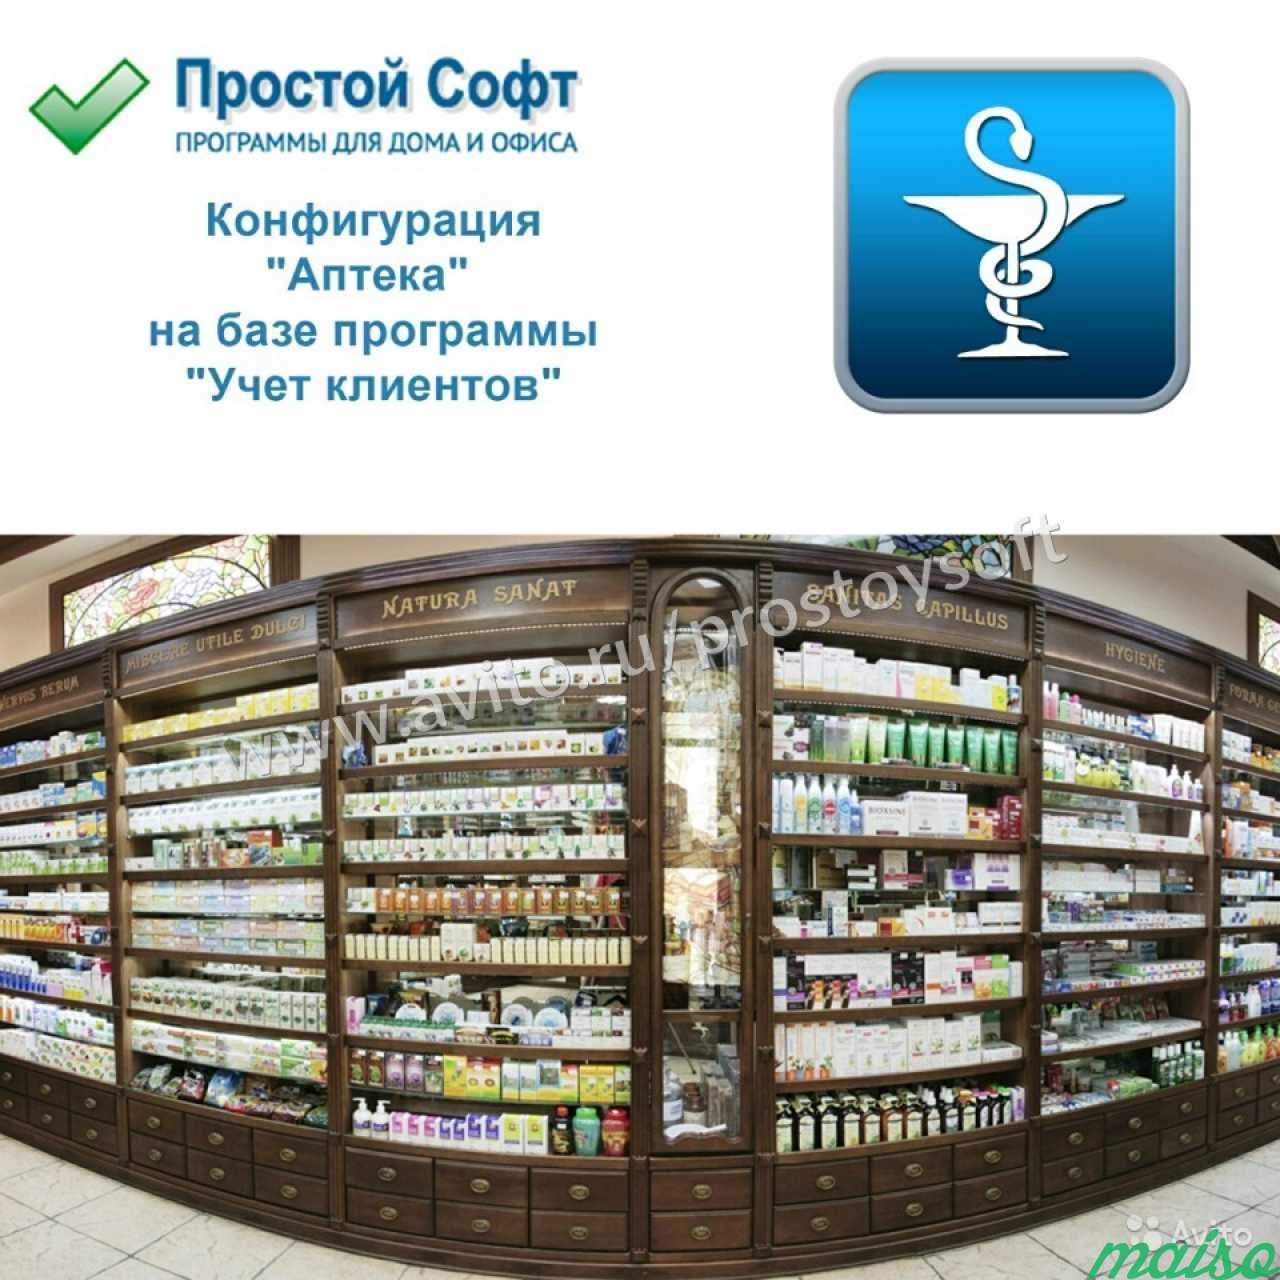 Конфигурация Аптека в Санкт-Петербурге. Фото 2